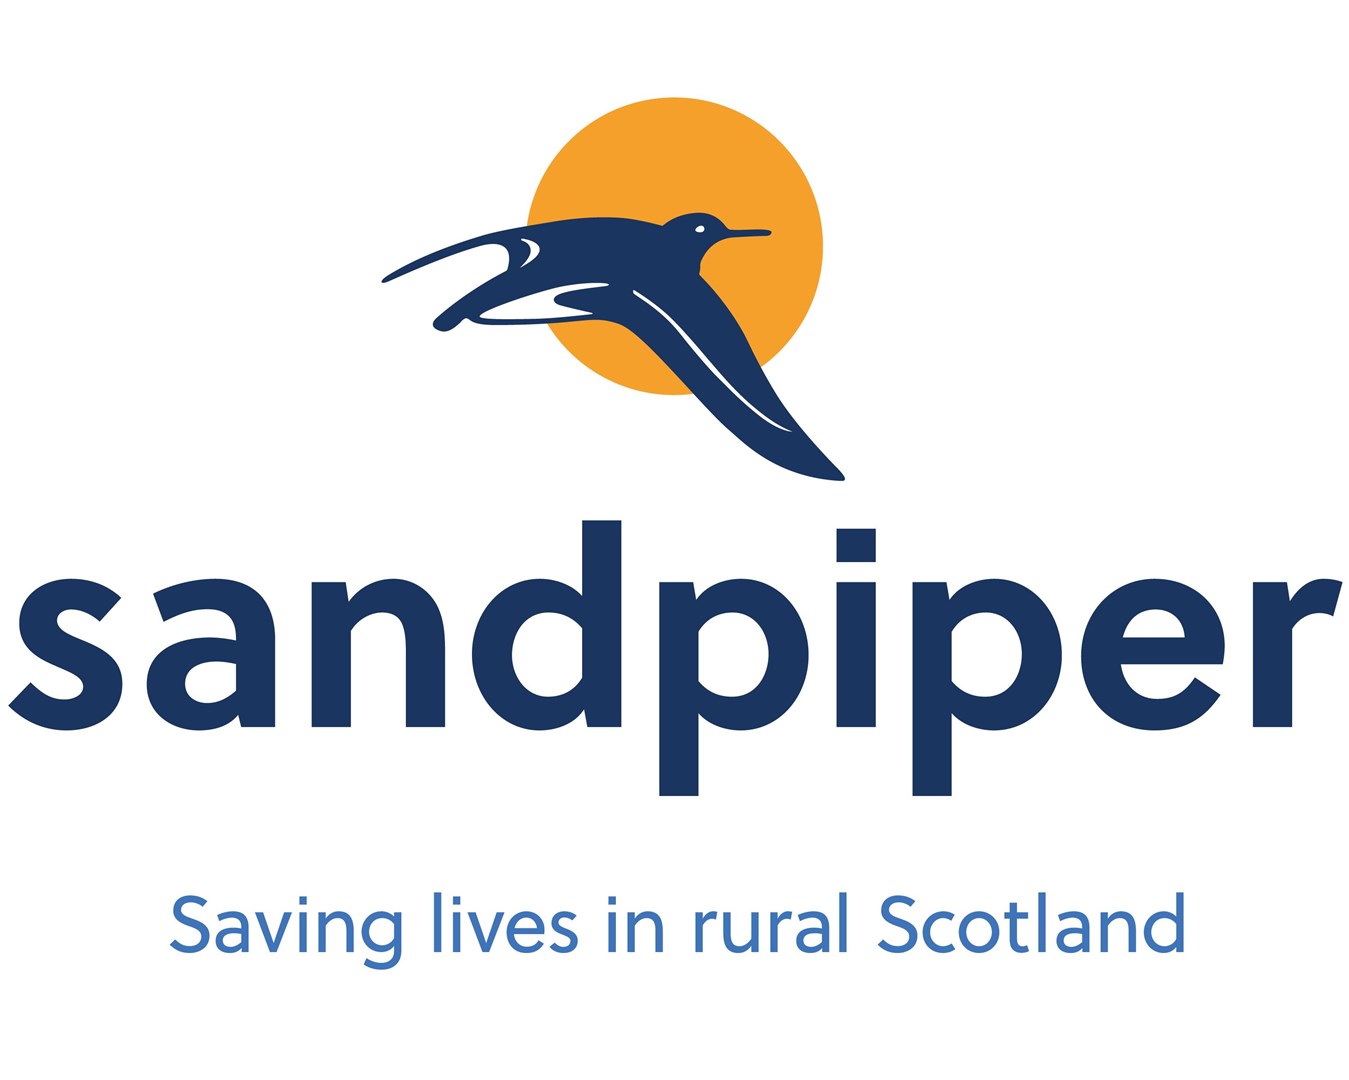 Sandpiper saves rural lives